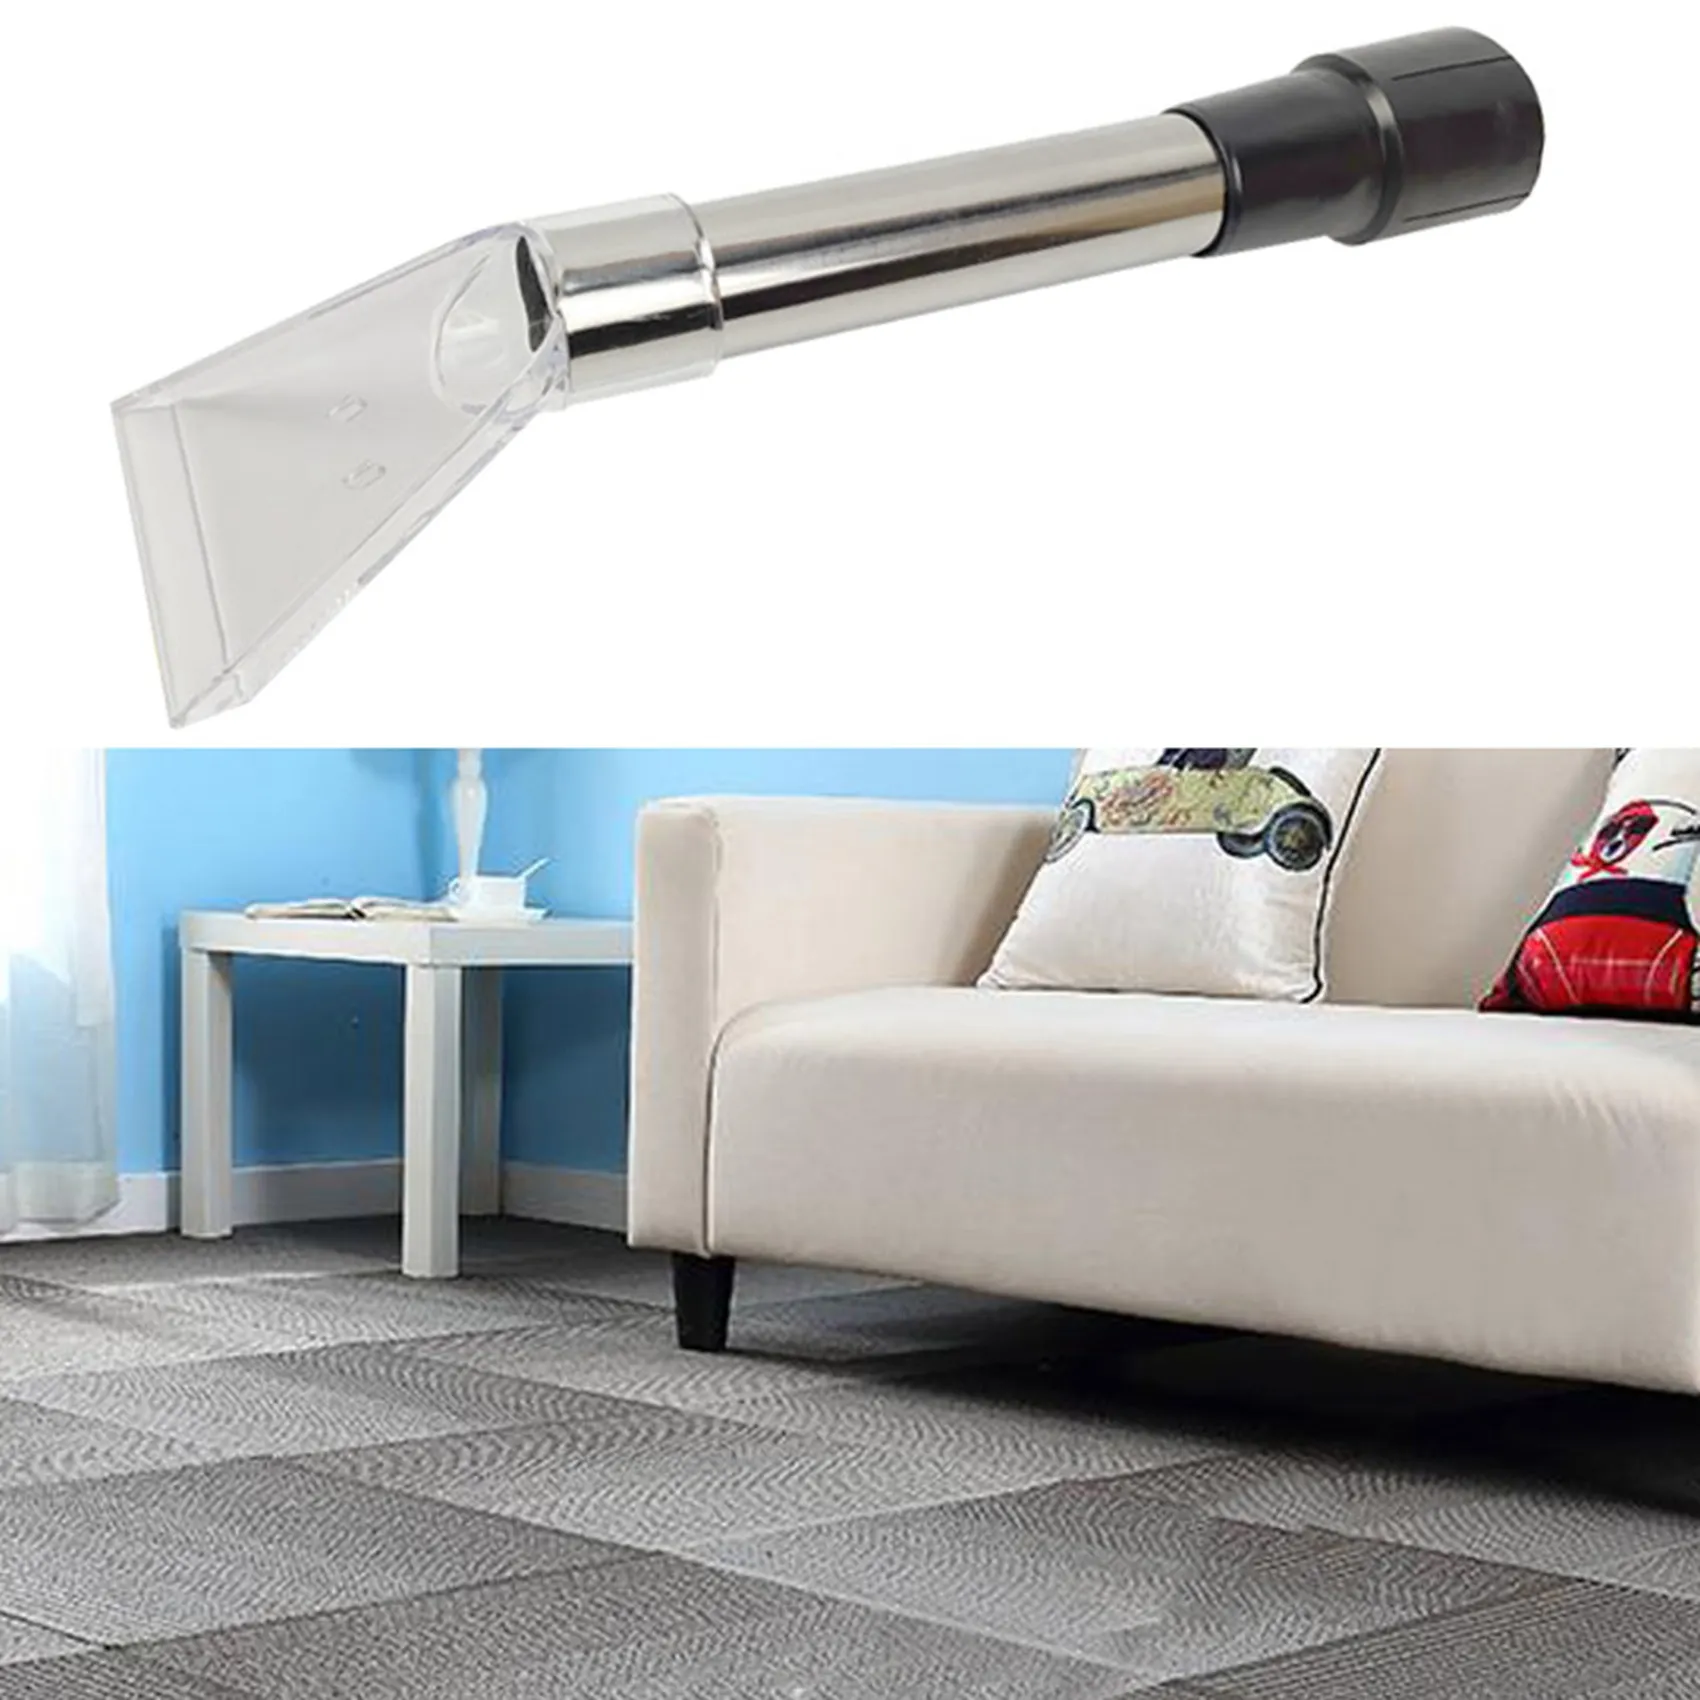 Swivel Head Vacuum Cleaner Brush Nozzle Vacuum Cleaner Brush Head Vacuum Floor Nozzle Carpet Cleaner Nozzles